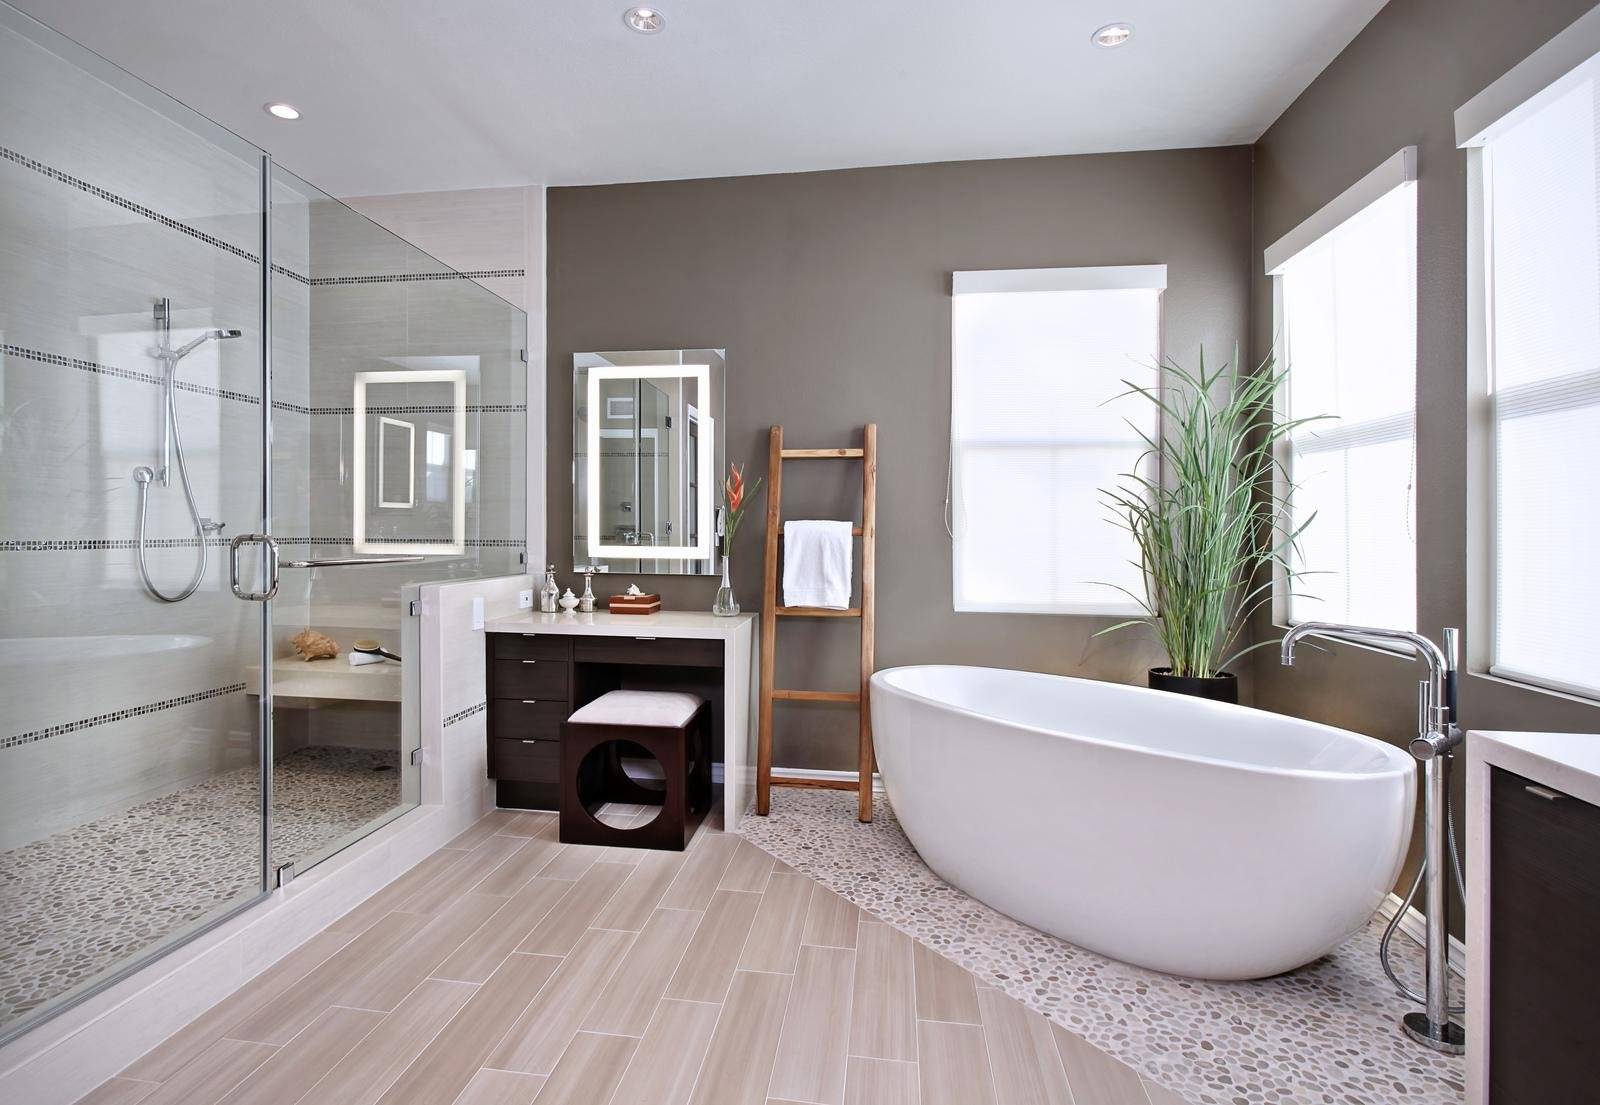 Современный дизайн ванной комнаты - фото и комментарии